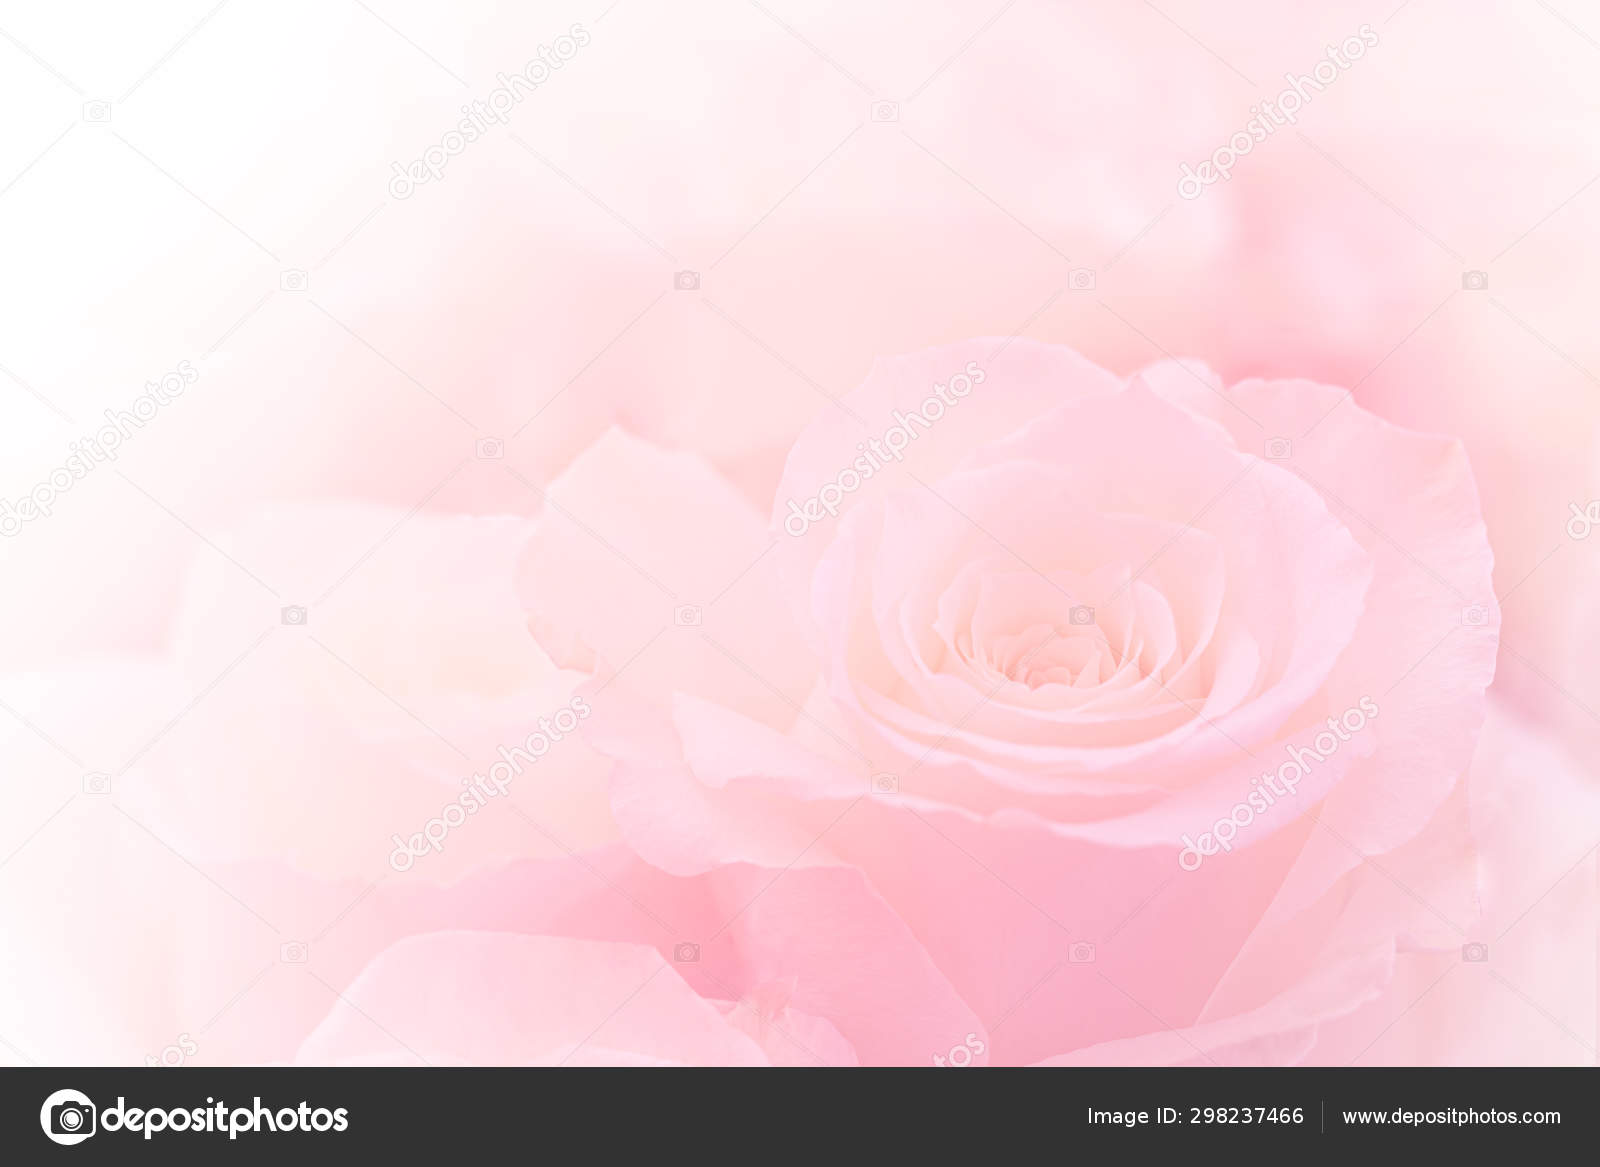 Hoa hồng màu hồng nhạt trên nền màu nhạt tạo nên một khung cảnh đầy màu sắc và đẹp mắt. Hãy chiêm ngưỡng hình ảnh này để cảm nhận sự tinh tế và quyến rũ của hoa hồng màu hồng nhạt.